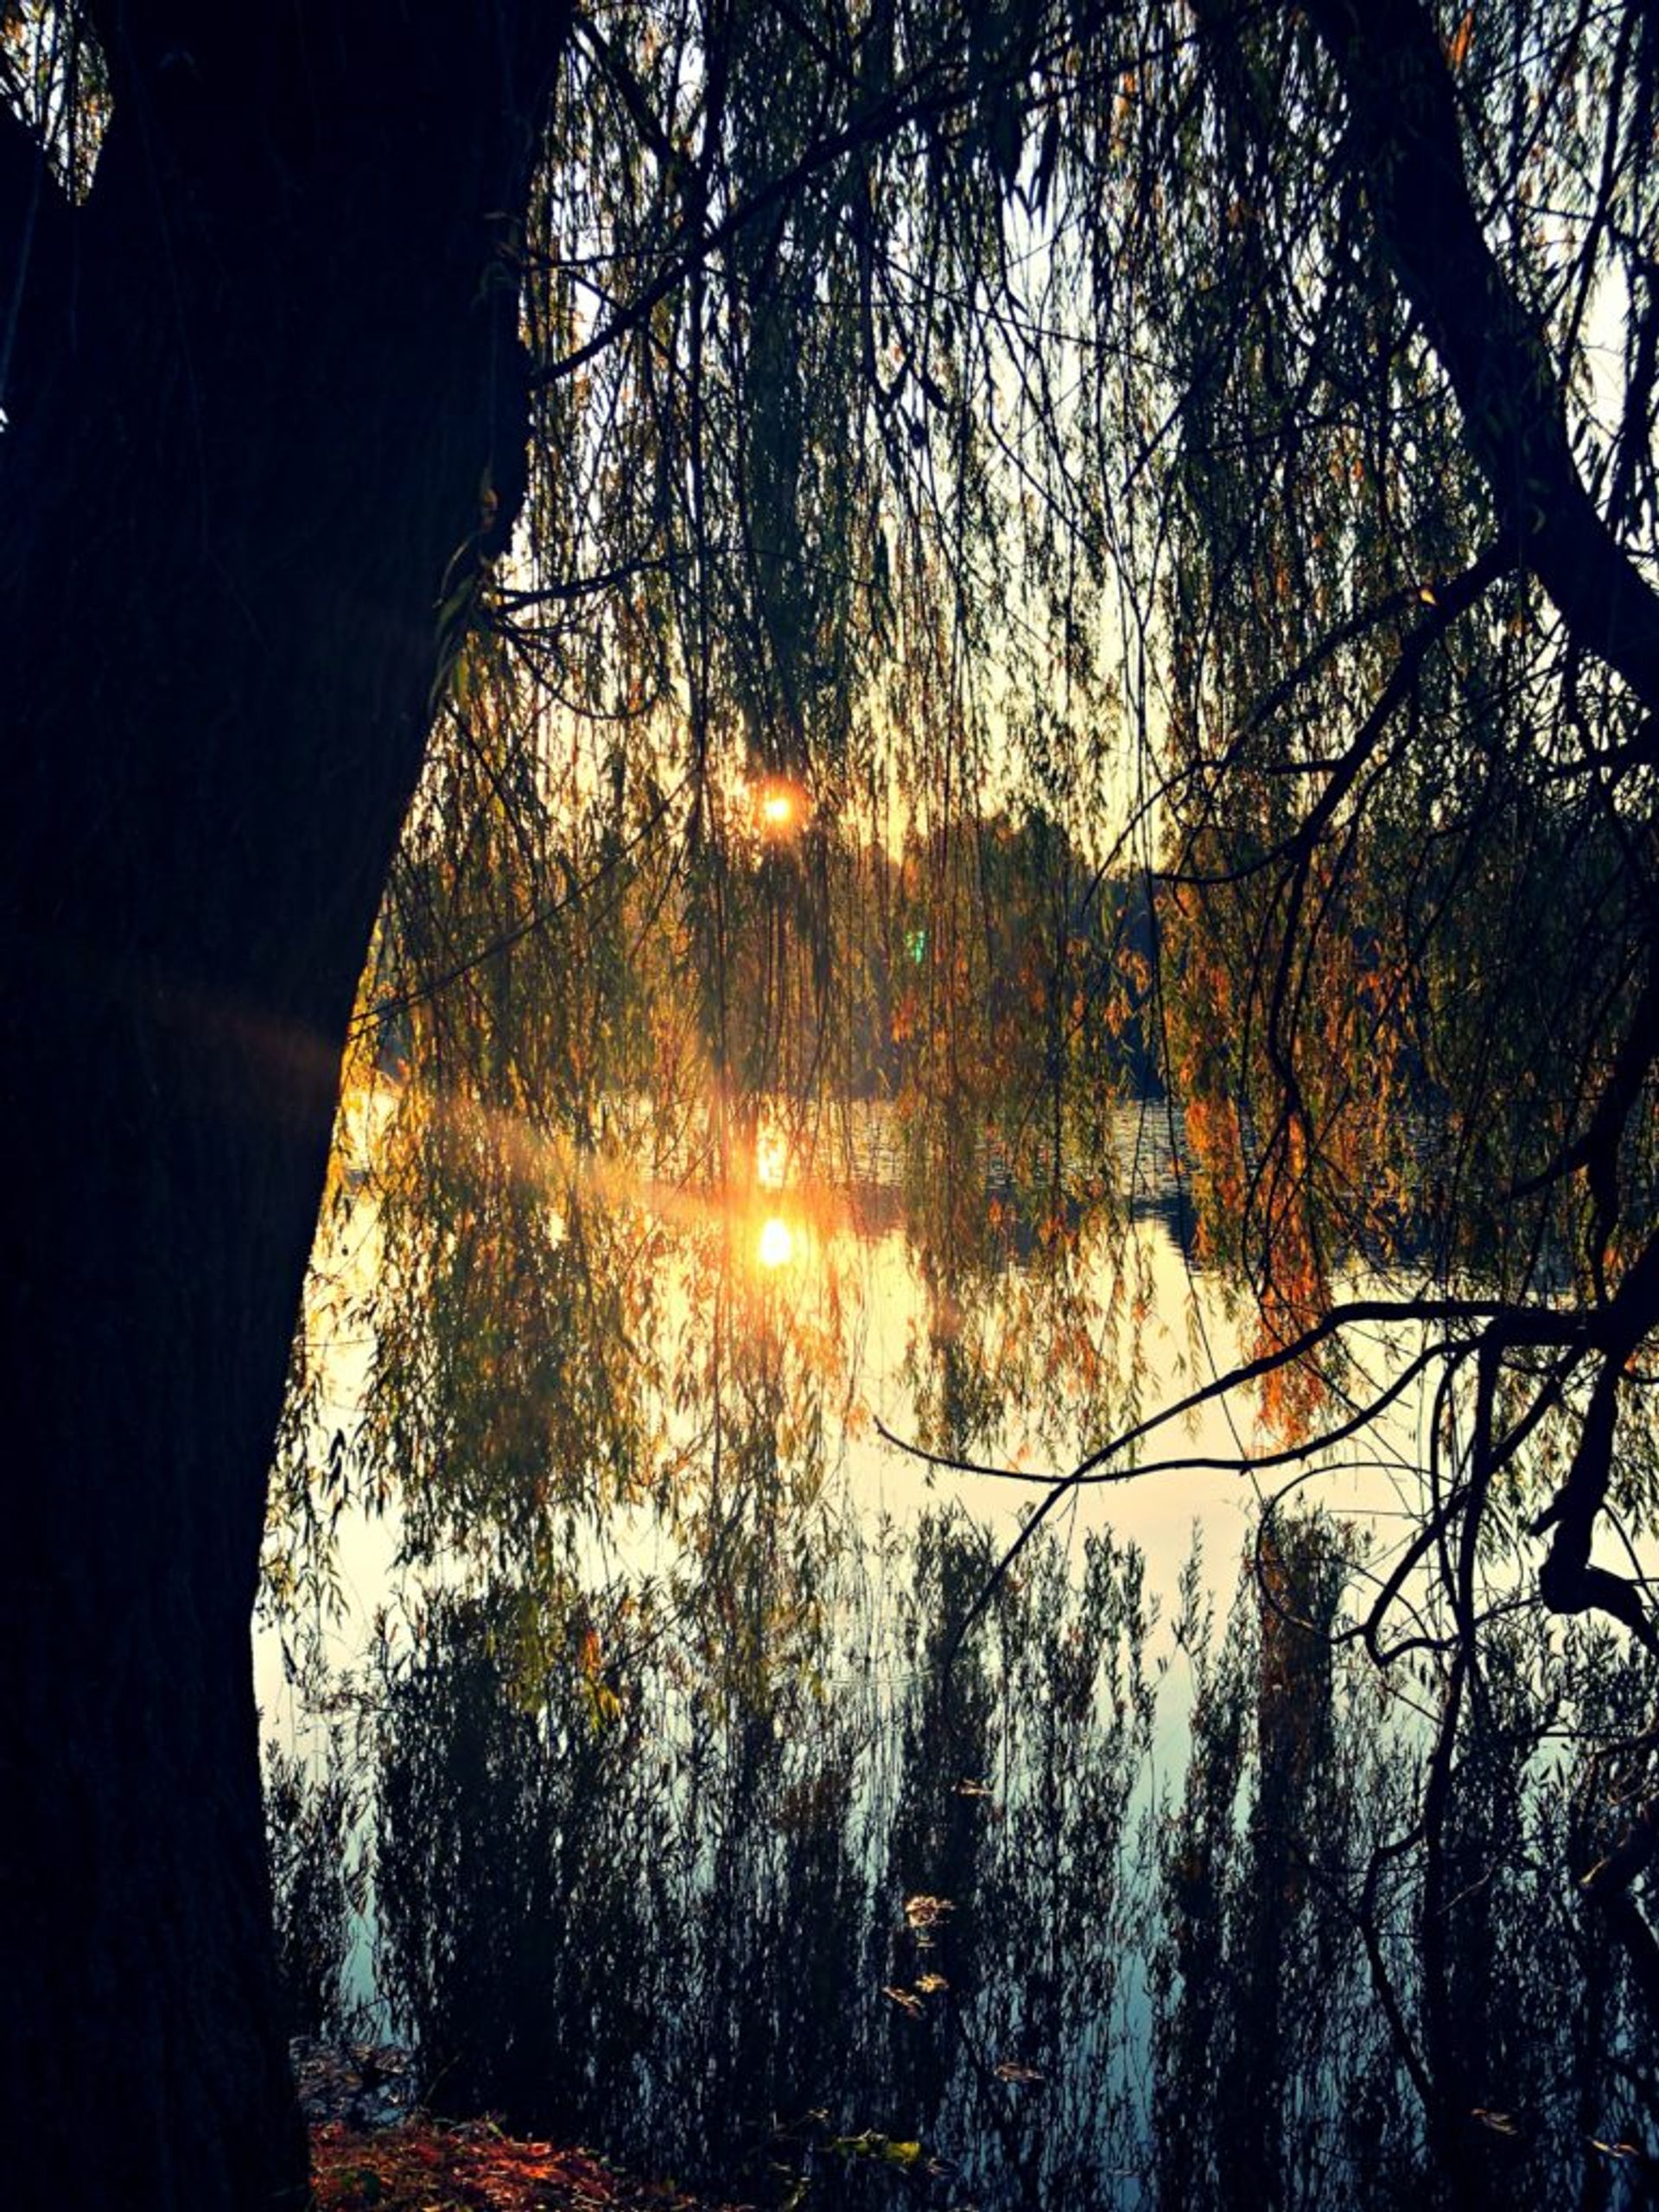 Sun shining on a lake.